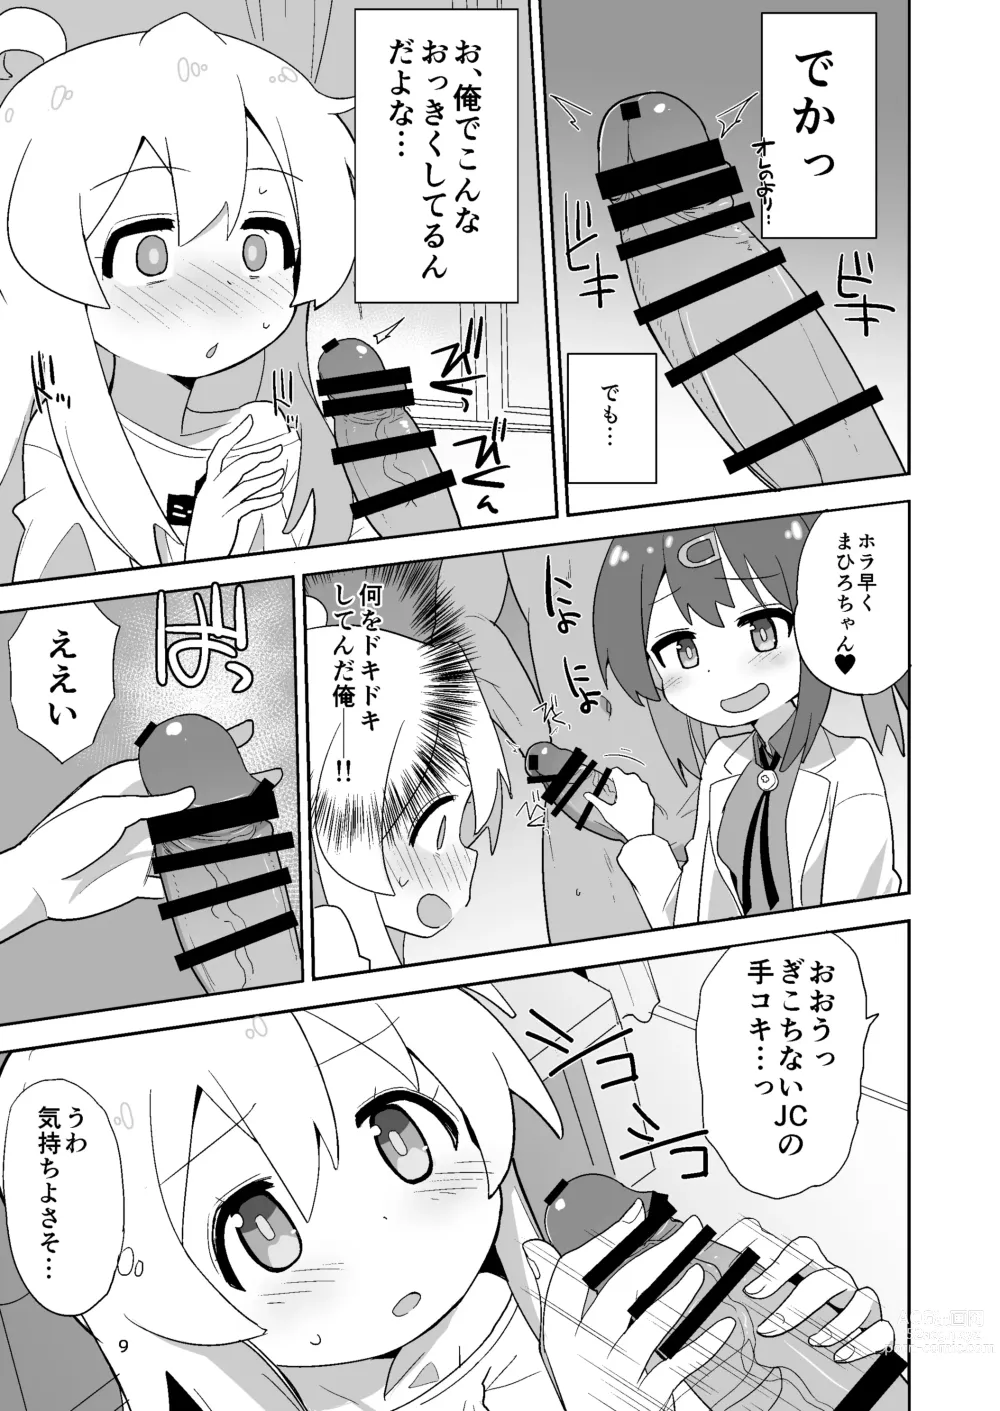 Page 9 of doujinshi Onii-chan wa Puniman!